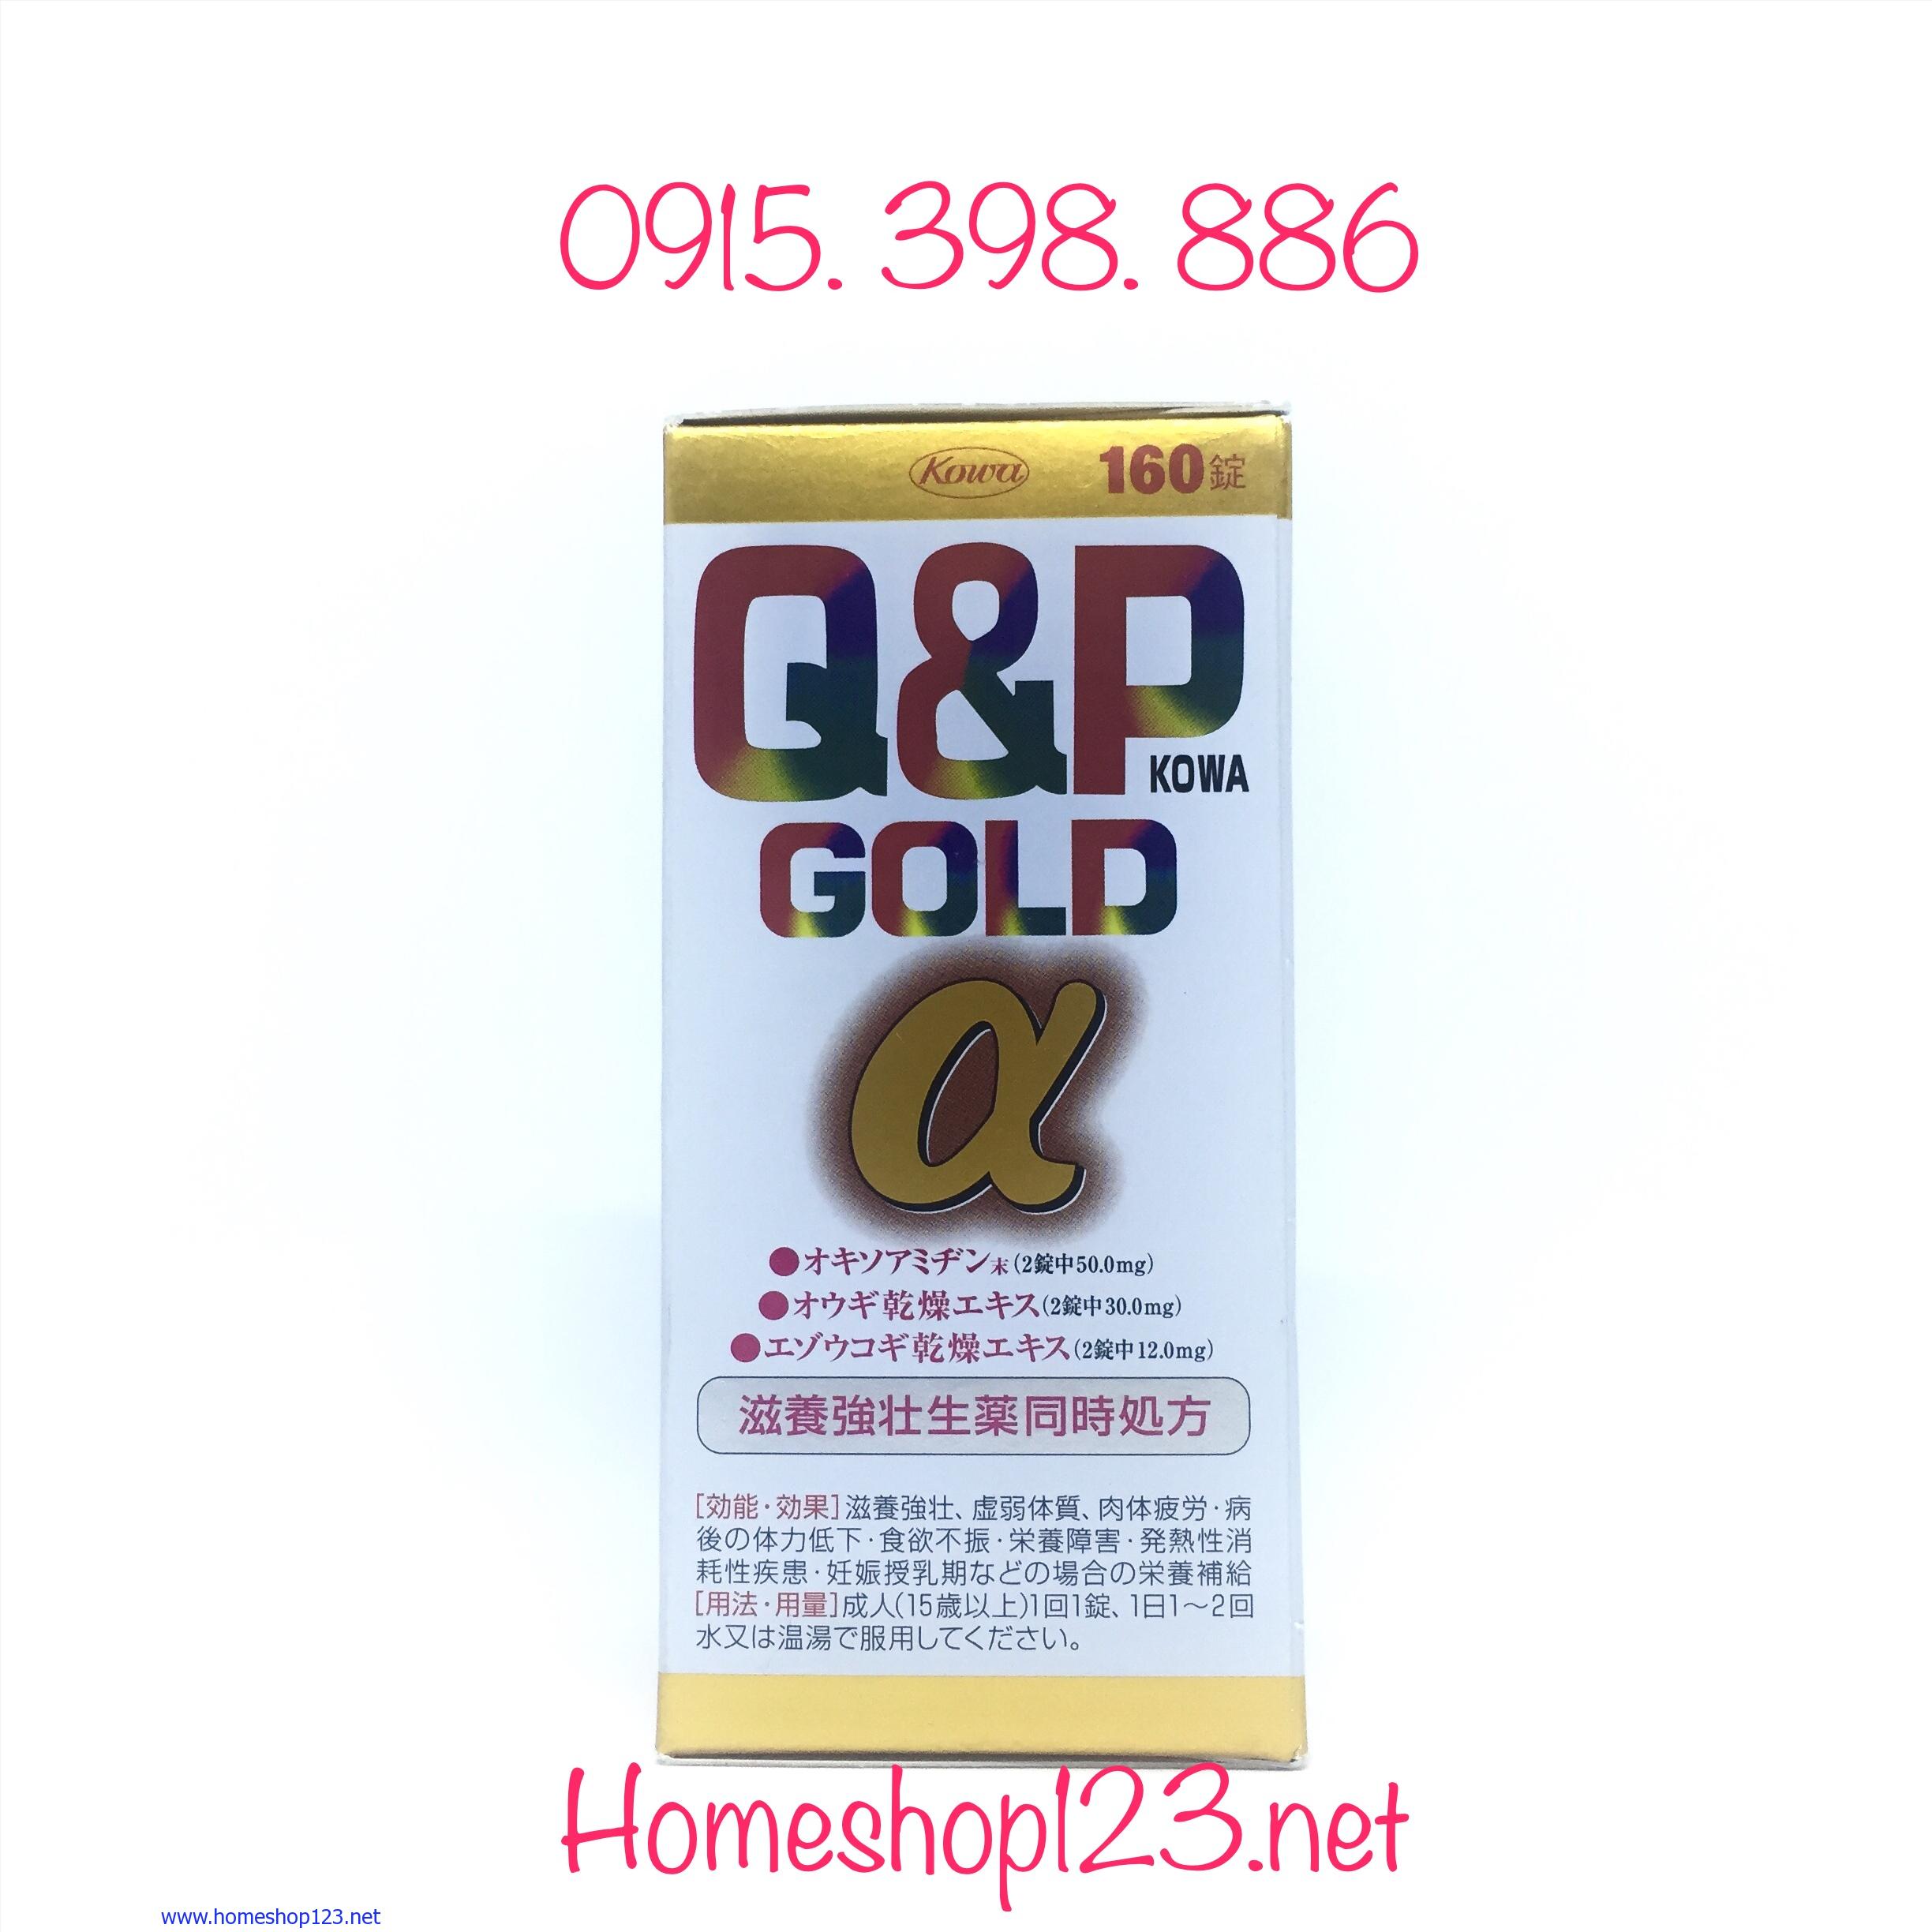 Q&P Gold α 160 viên - Bổ sung vitamin chống suy nhược, tăng đề kháng